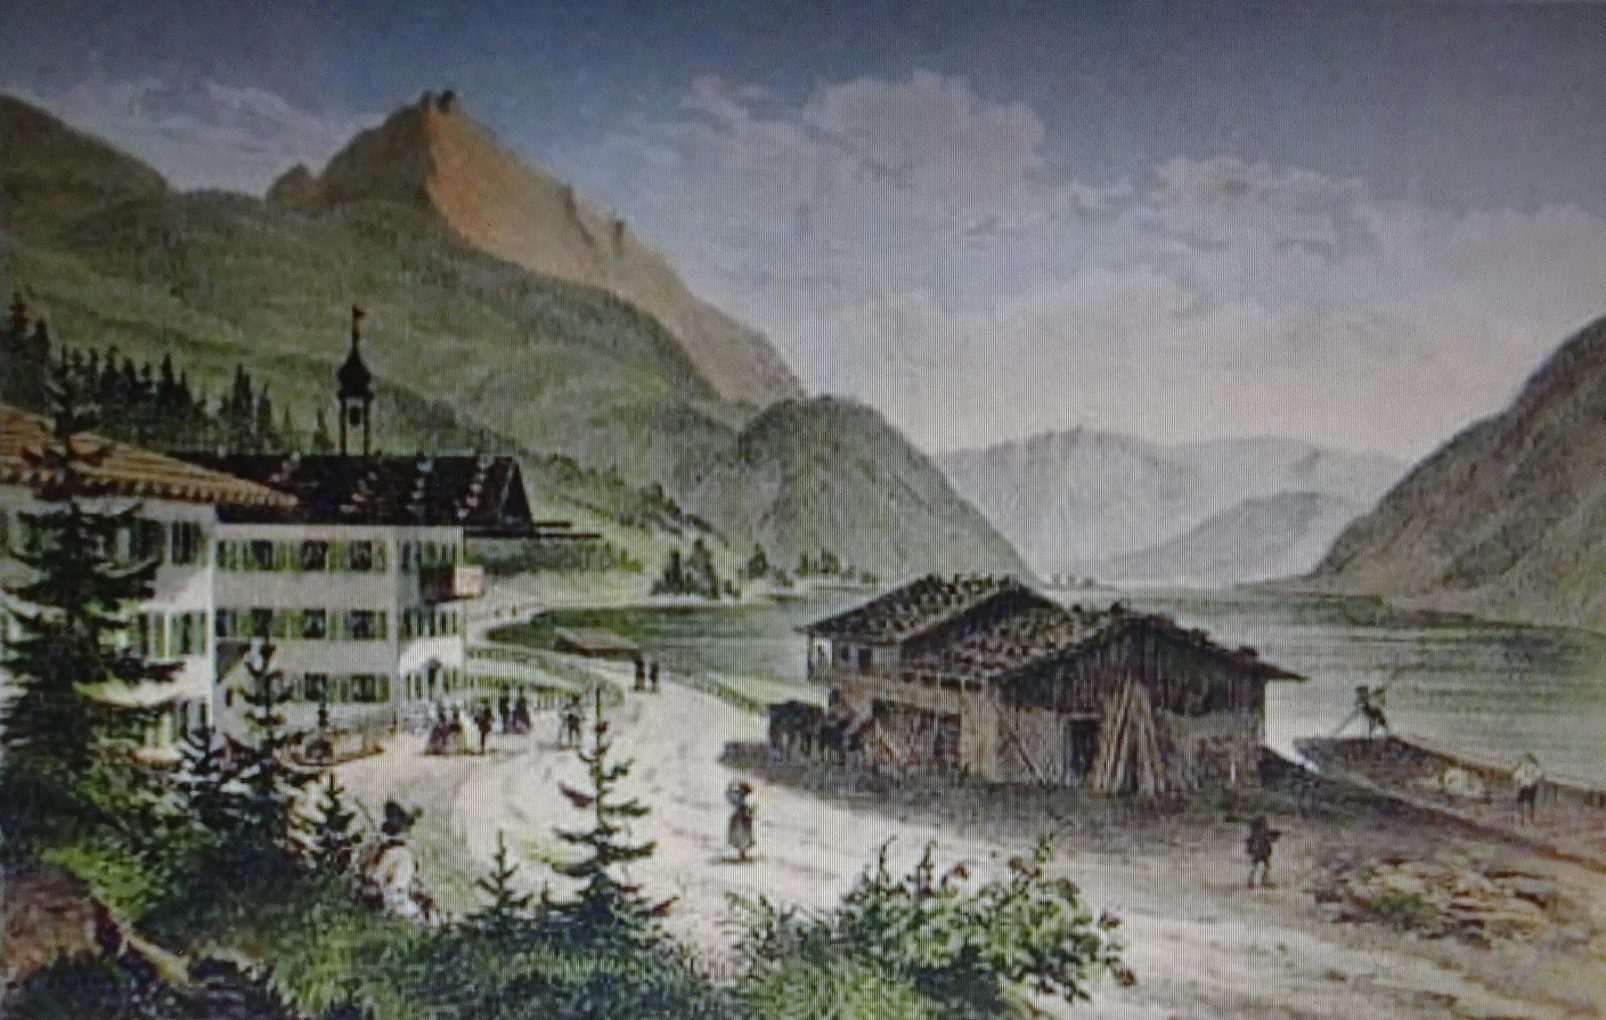 Autor anonimowy, Widok hotelu Scholastyka nad Achensee, około 1840, staloryt barwny na papierze, zbiory prywatne